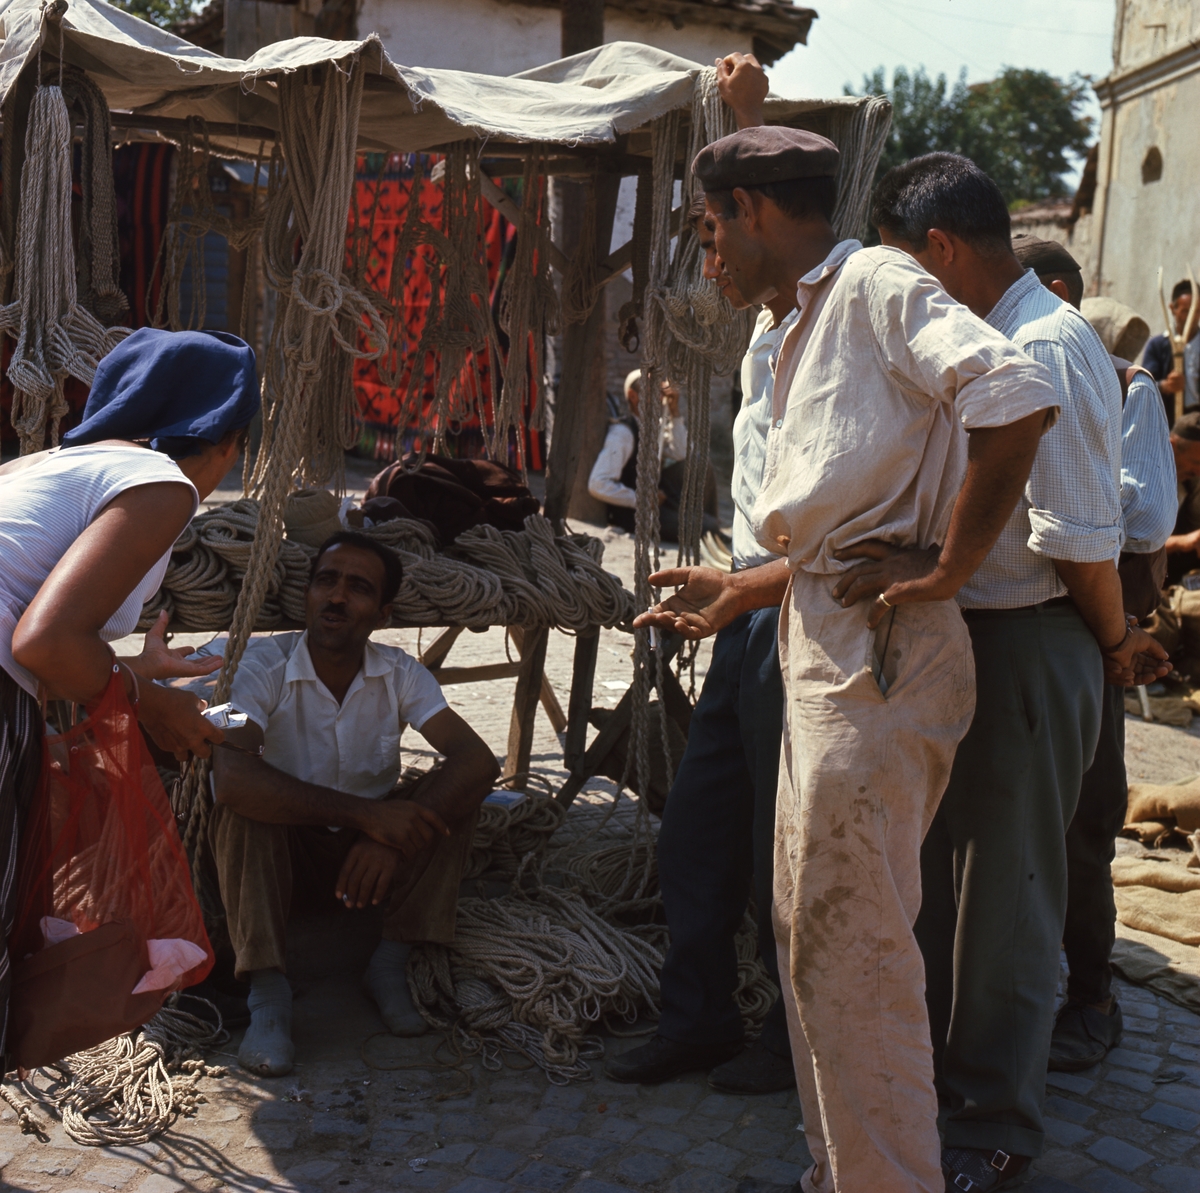 Framför ett marknadsstånd med rep sitter en man på marken. Framför honom står en kvinna och flera män.